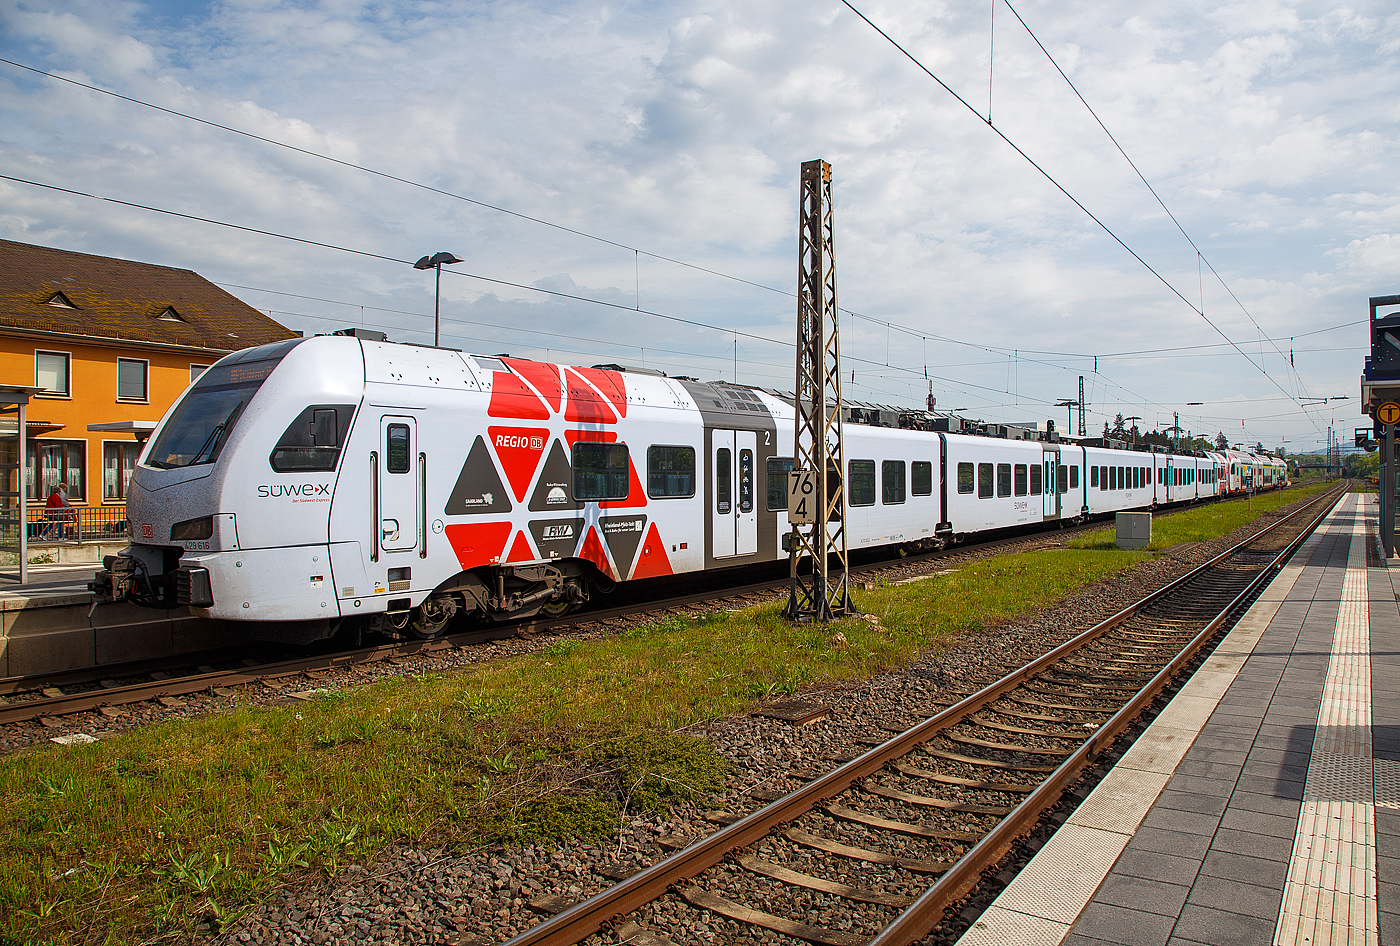 Der CFL Stadler KISS 2308 als RE 11  DeLux-Express  gekuppelt hier am Ende mit dem fünfteilige SÜWEX Stadler FLIRT³  - 429 116 / 429 616 als RE 1  Südwest-Express  nach Koblenz haben am 29.04.2018 den Hbf Wittlich erreicht.

Auffällig ist wie wenige Einstiegstüren eigentlich der fünfteilige SÜWEX Stadler FLIRT³, es sind nur 4 Türen pro Seite. Vergleichsweise bei den neuen fünfteiligen Stadler FLIRT 3 XL (der BR 3429) sind es 10 Türen pro Seite. Auch vorne der kürzere dreiteilige KISS hat mehr, bei ihm sind es 6 Türen pro Seite.

Seit dem 16. März 2015 fahren die CFL-KISS auf dem Abschnitt zwischen Koblenz und Trier gemeinsam mit den FLIRT³  der DB Regio Südwest in gemischter Mehrfachtraktion. Das ein- und zweistöckige elektrische Triebzüge zweier Staatsbahnen gemeinsam unterwegs sind, dürfte europaweit einmalig sei. Ab dem 10.12.2017 fahren einzelne CFL KISS von Koblenz weiter über Bonn und Köln Hbf bis nach Düsseldorf.